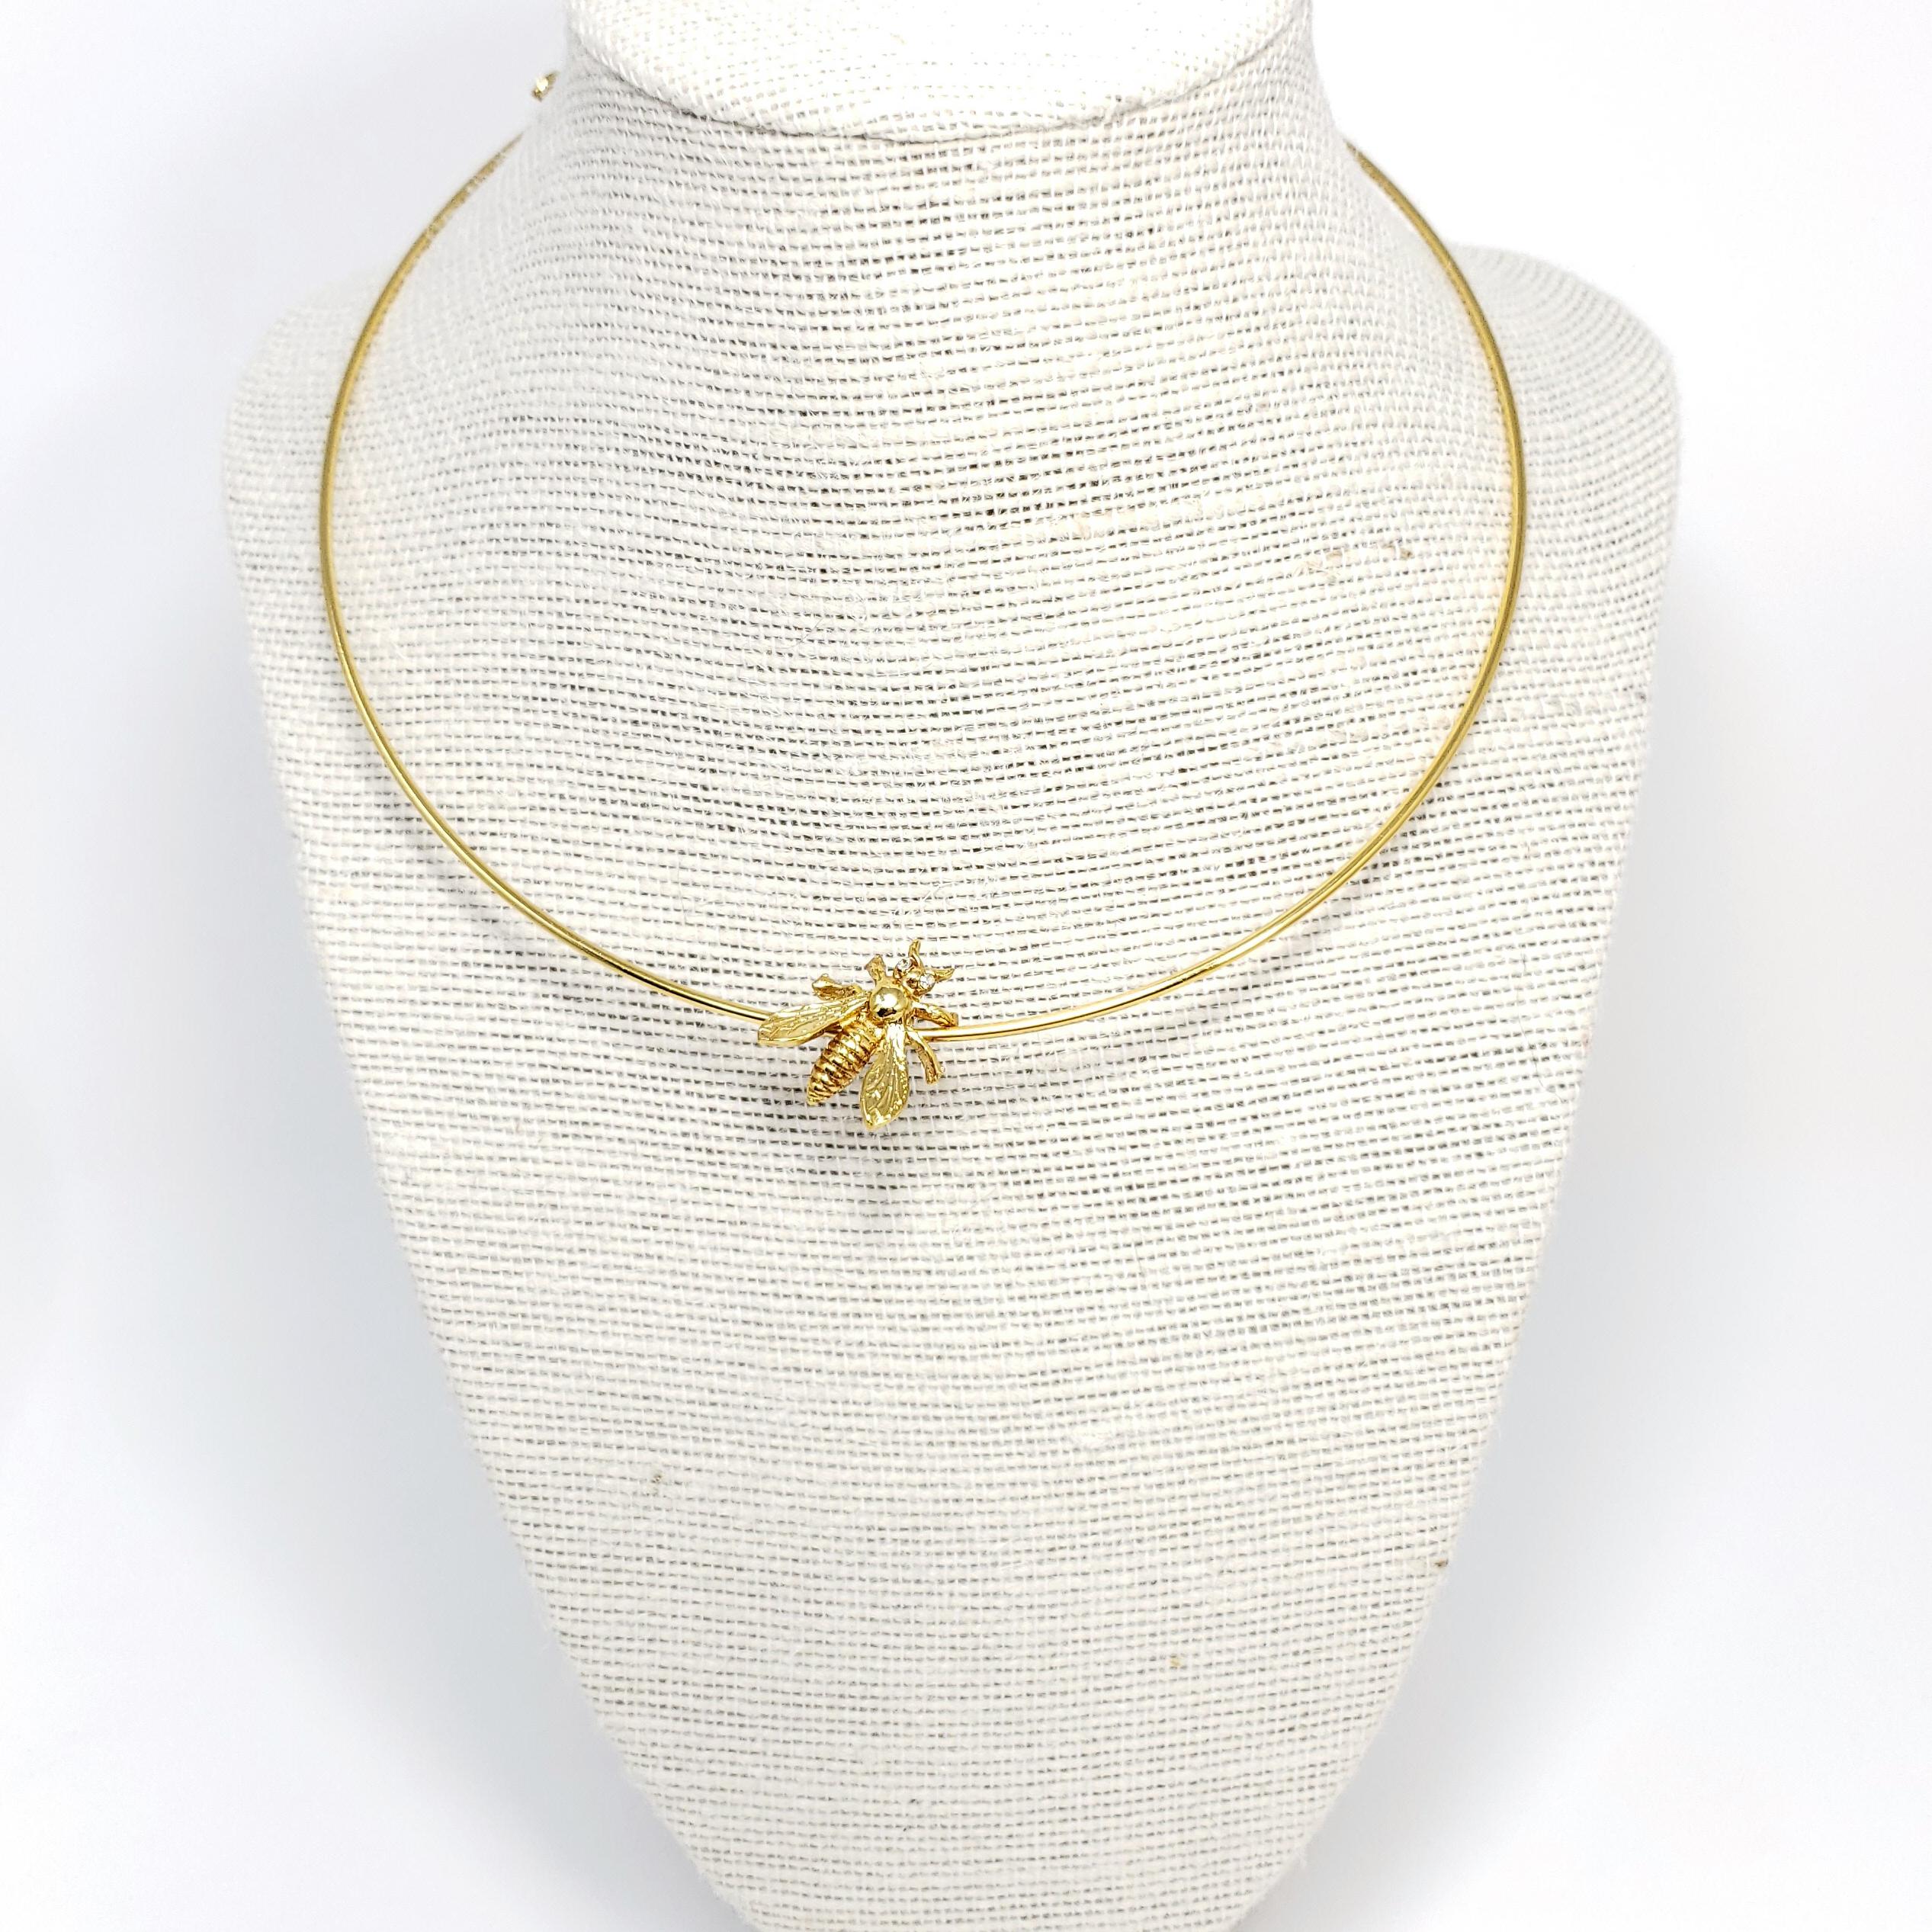 Ein goldenes, mit einer Biene besetztes Halsband von Oscar de la Renta.

Vergoldet.

Markenzeichen: Oscar de la Renta, Hergestellt in den USA
